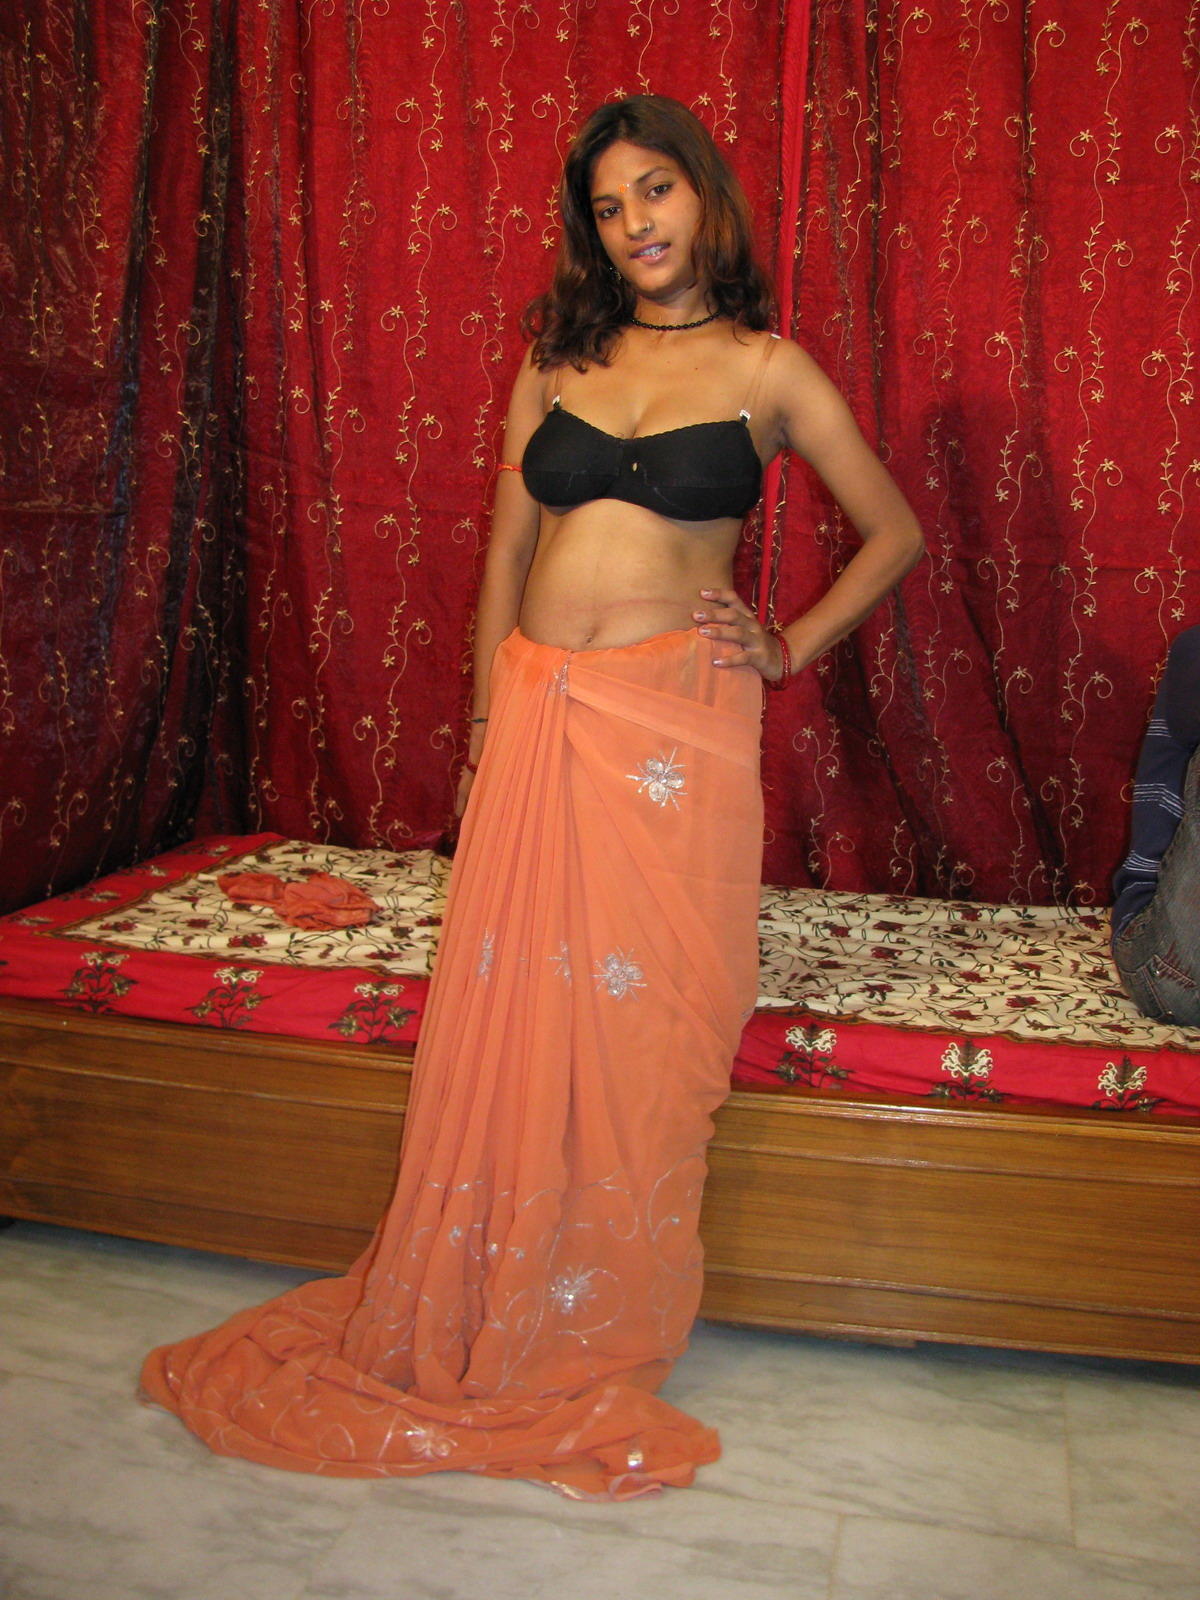 Desikama Indian Girl In Saree